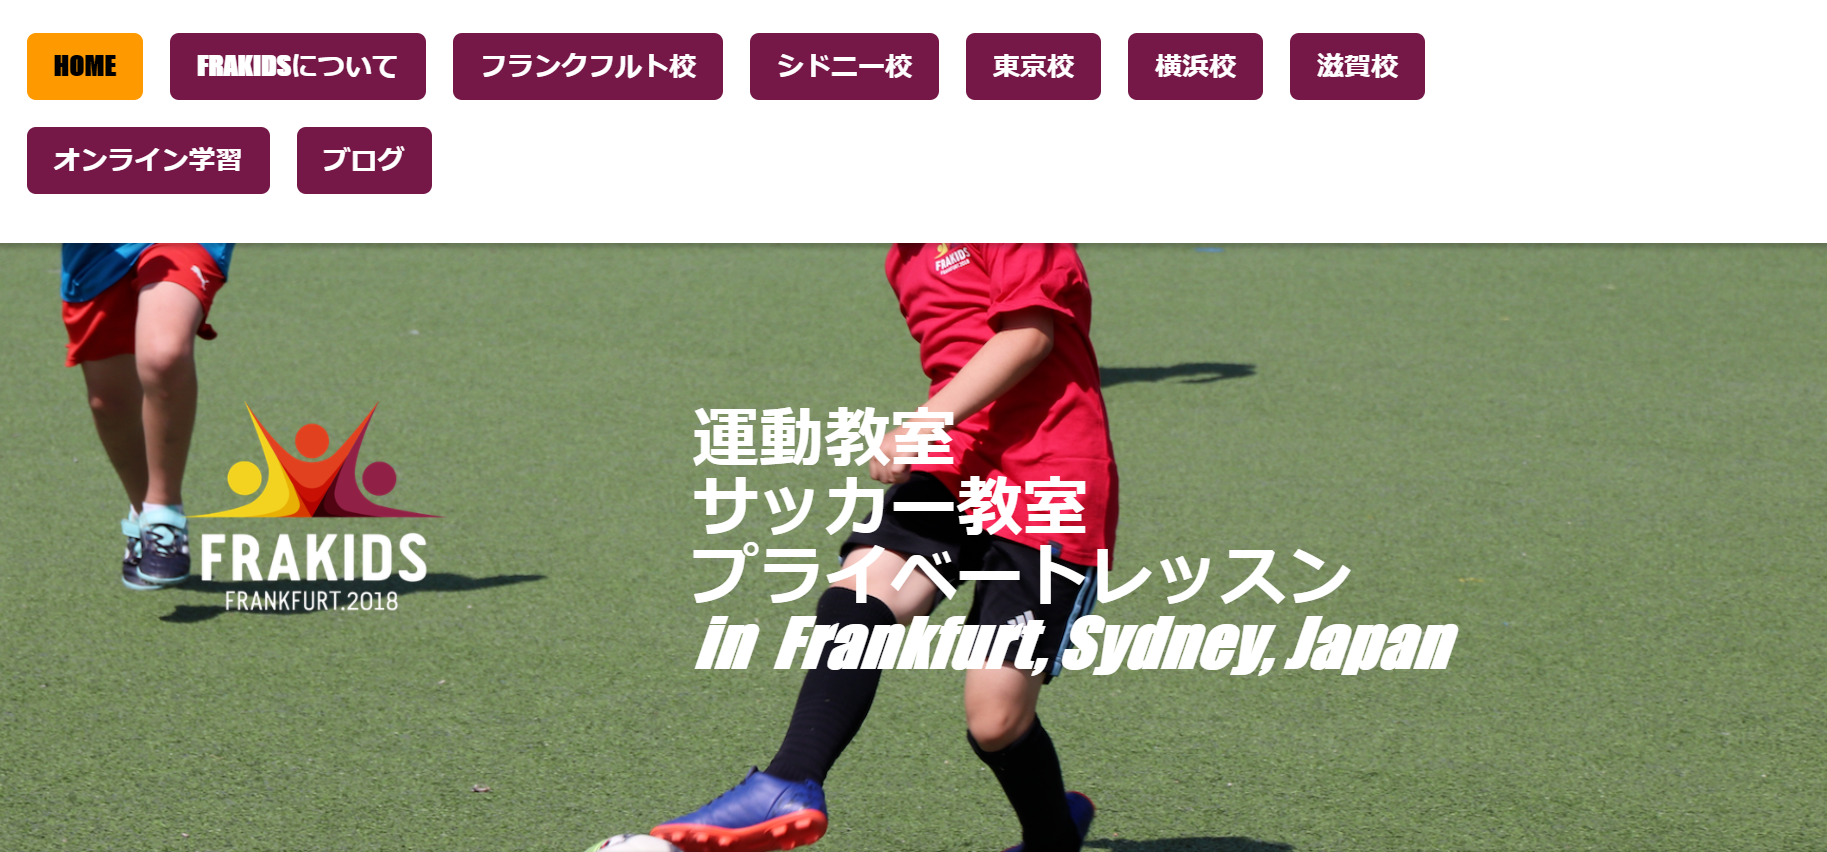 21年版 神奈川県のおすすめサッカースクール一覧 サルウェブ